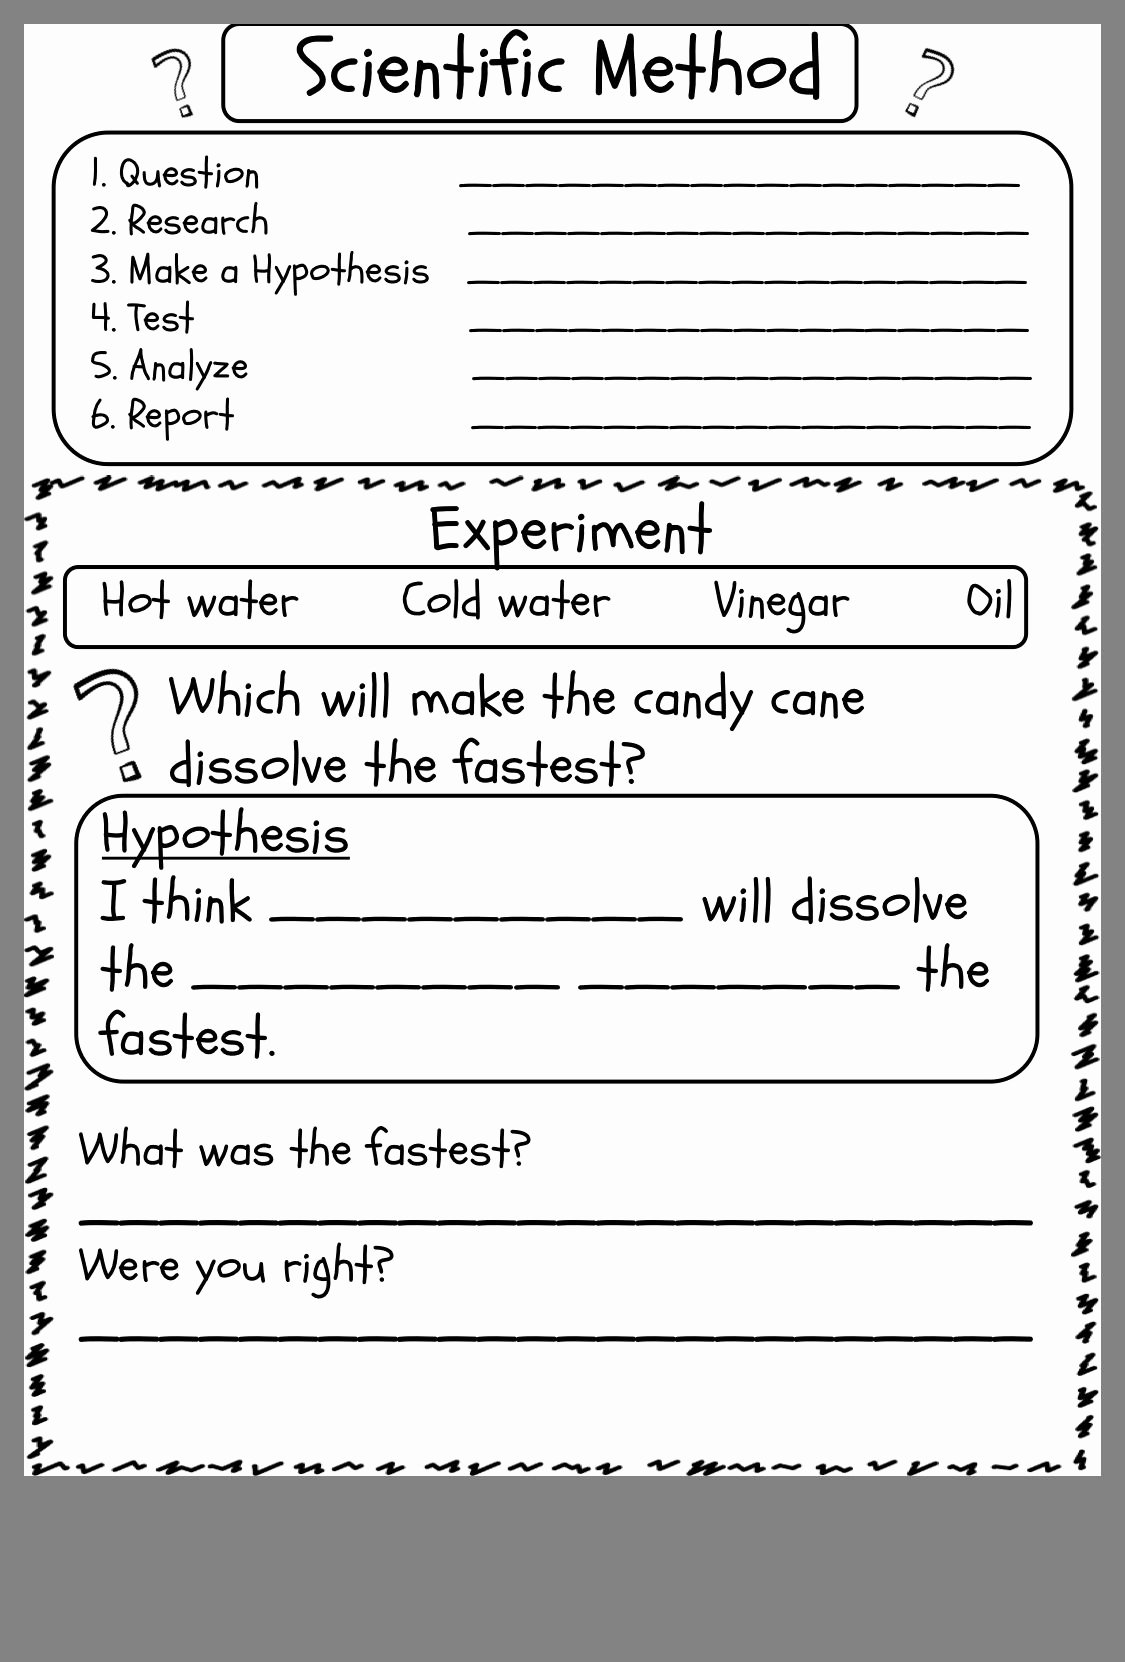 Scientific Method Worksheet Middle School Elegant Scientific Method Experiment Worksheet